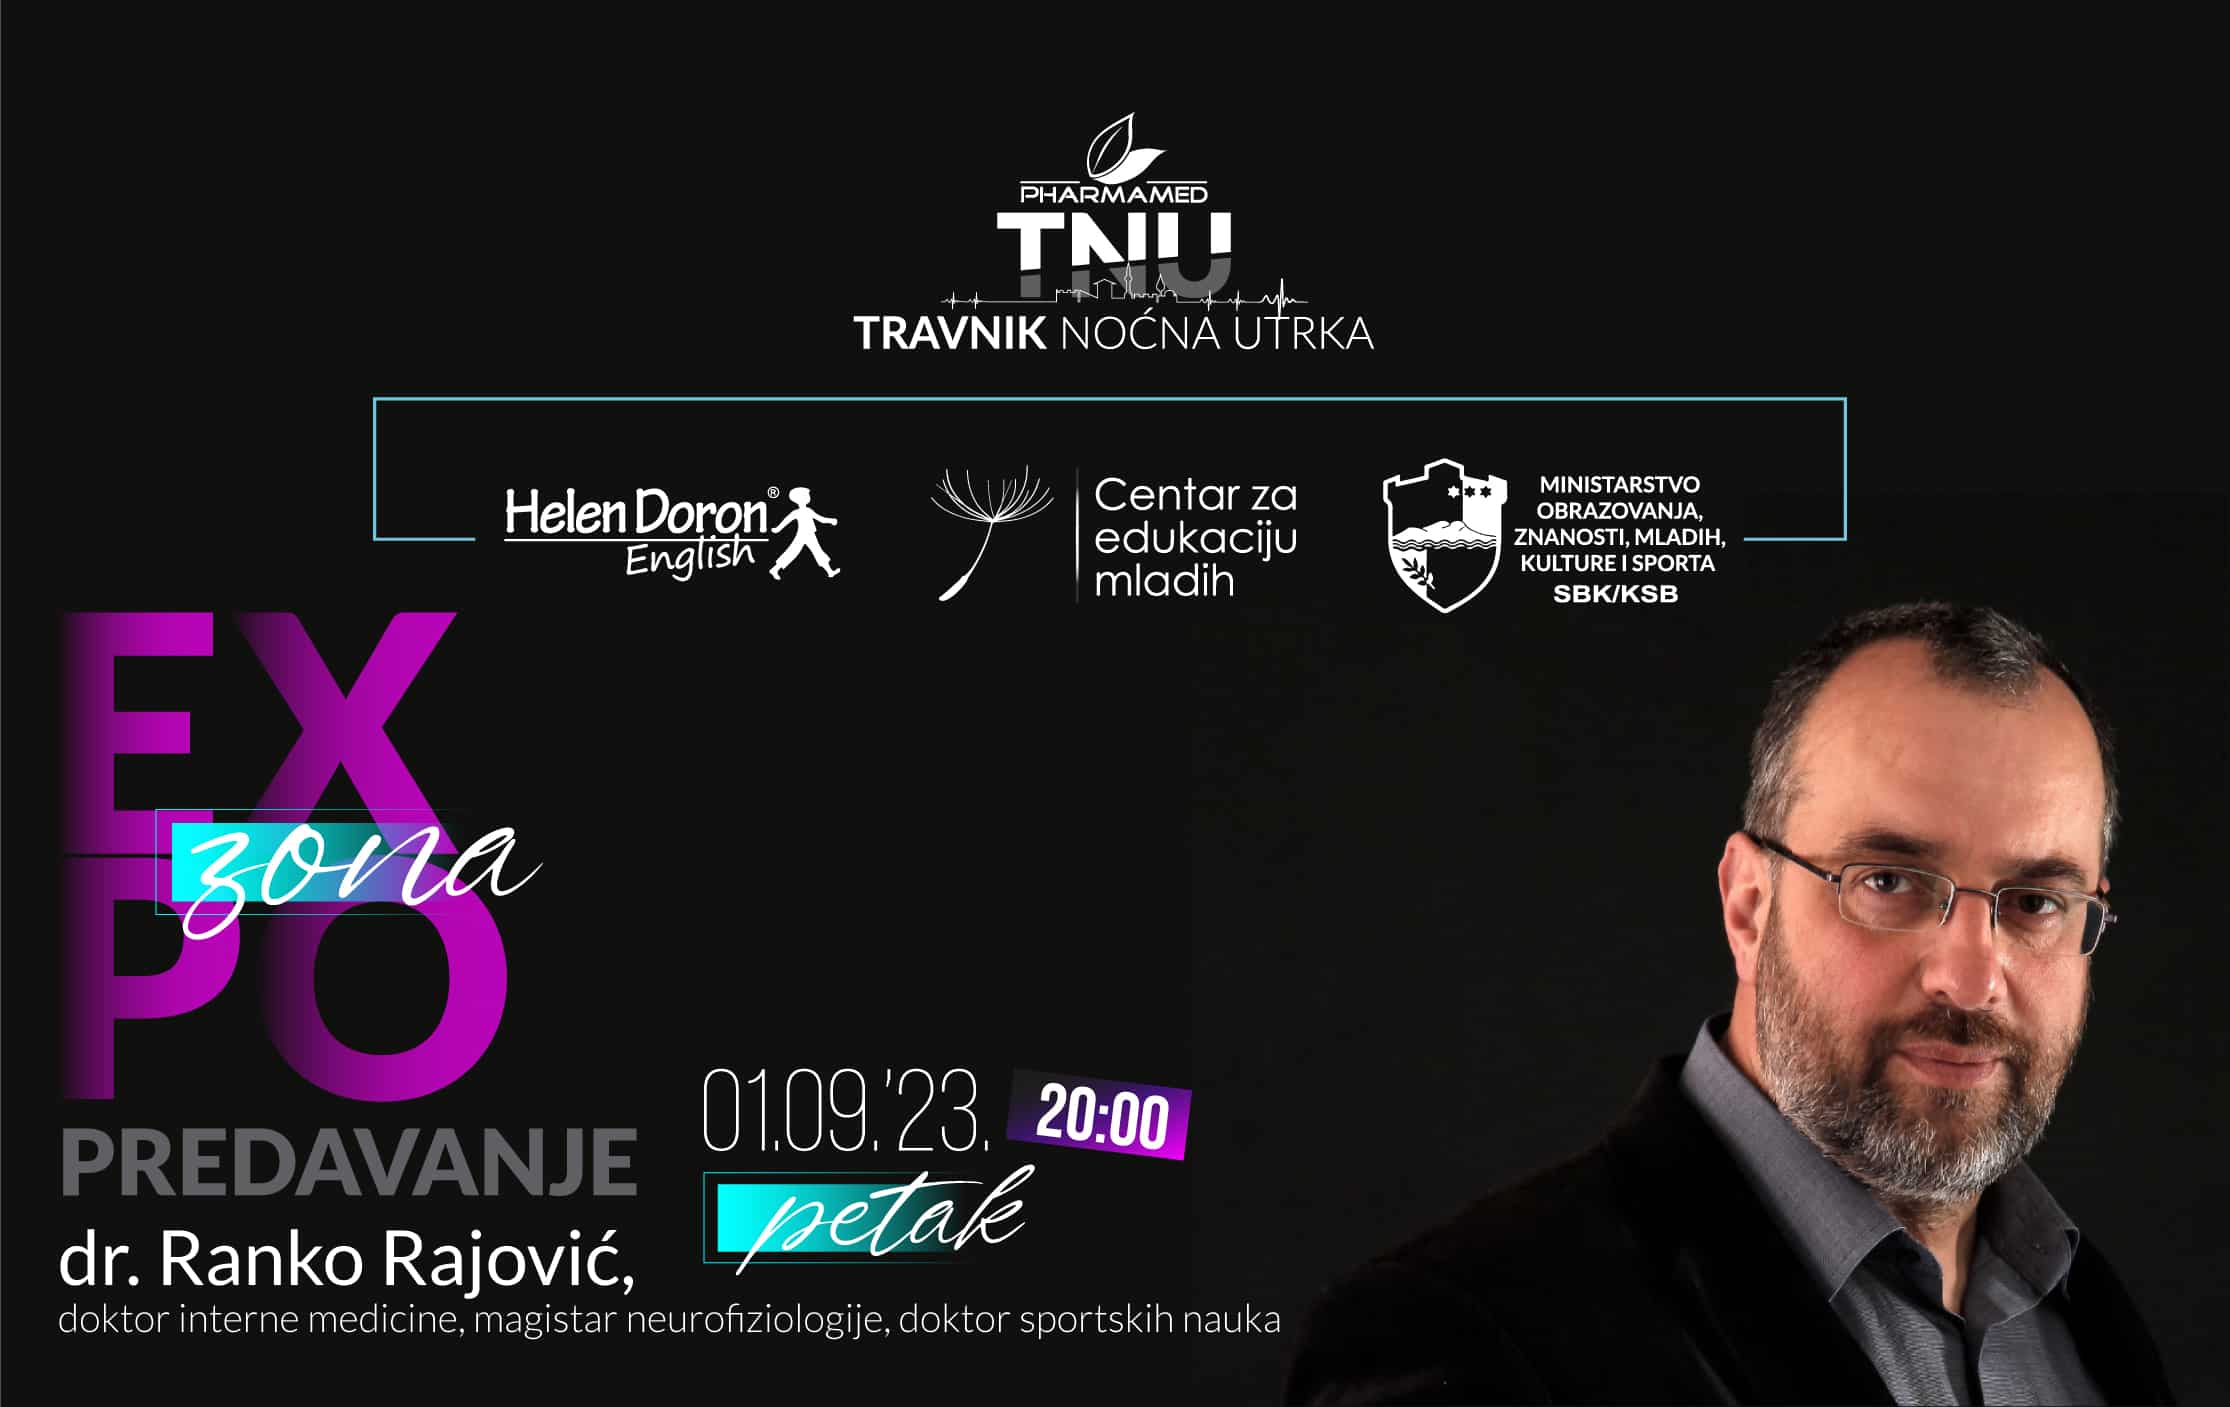 U EXPO ZONI Pharmamed Travnik noćne utrke, ugledni edukator dr. Ranko Rajović održat će inspirativno predavanje o razvoju djece